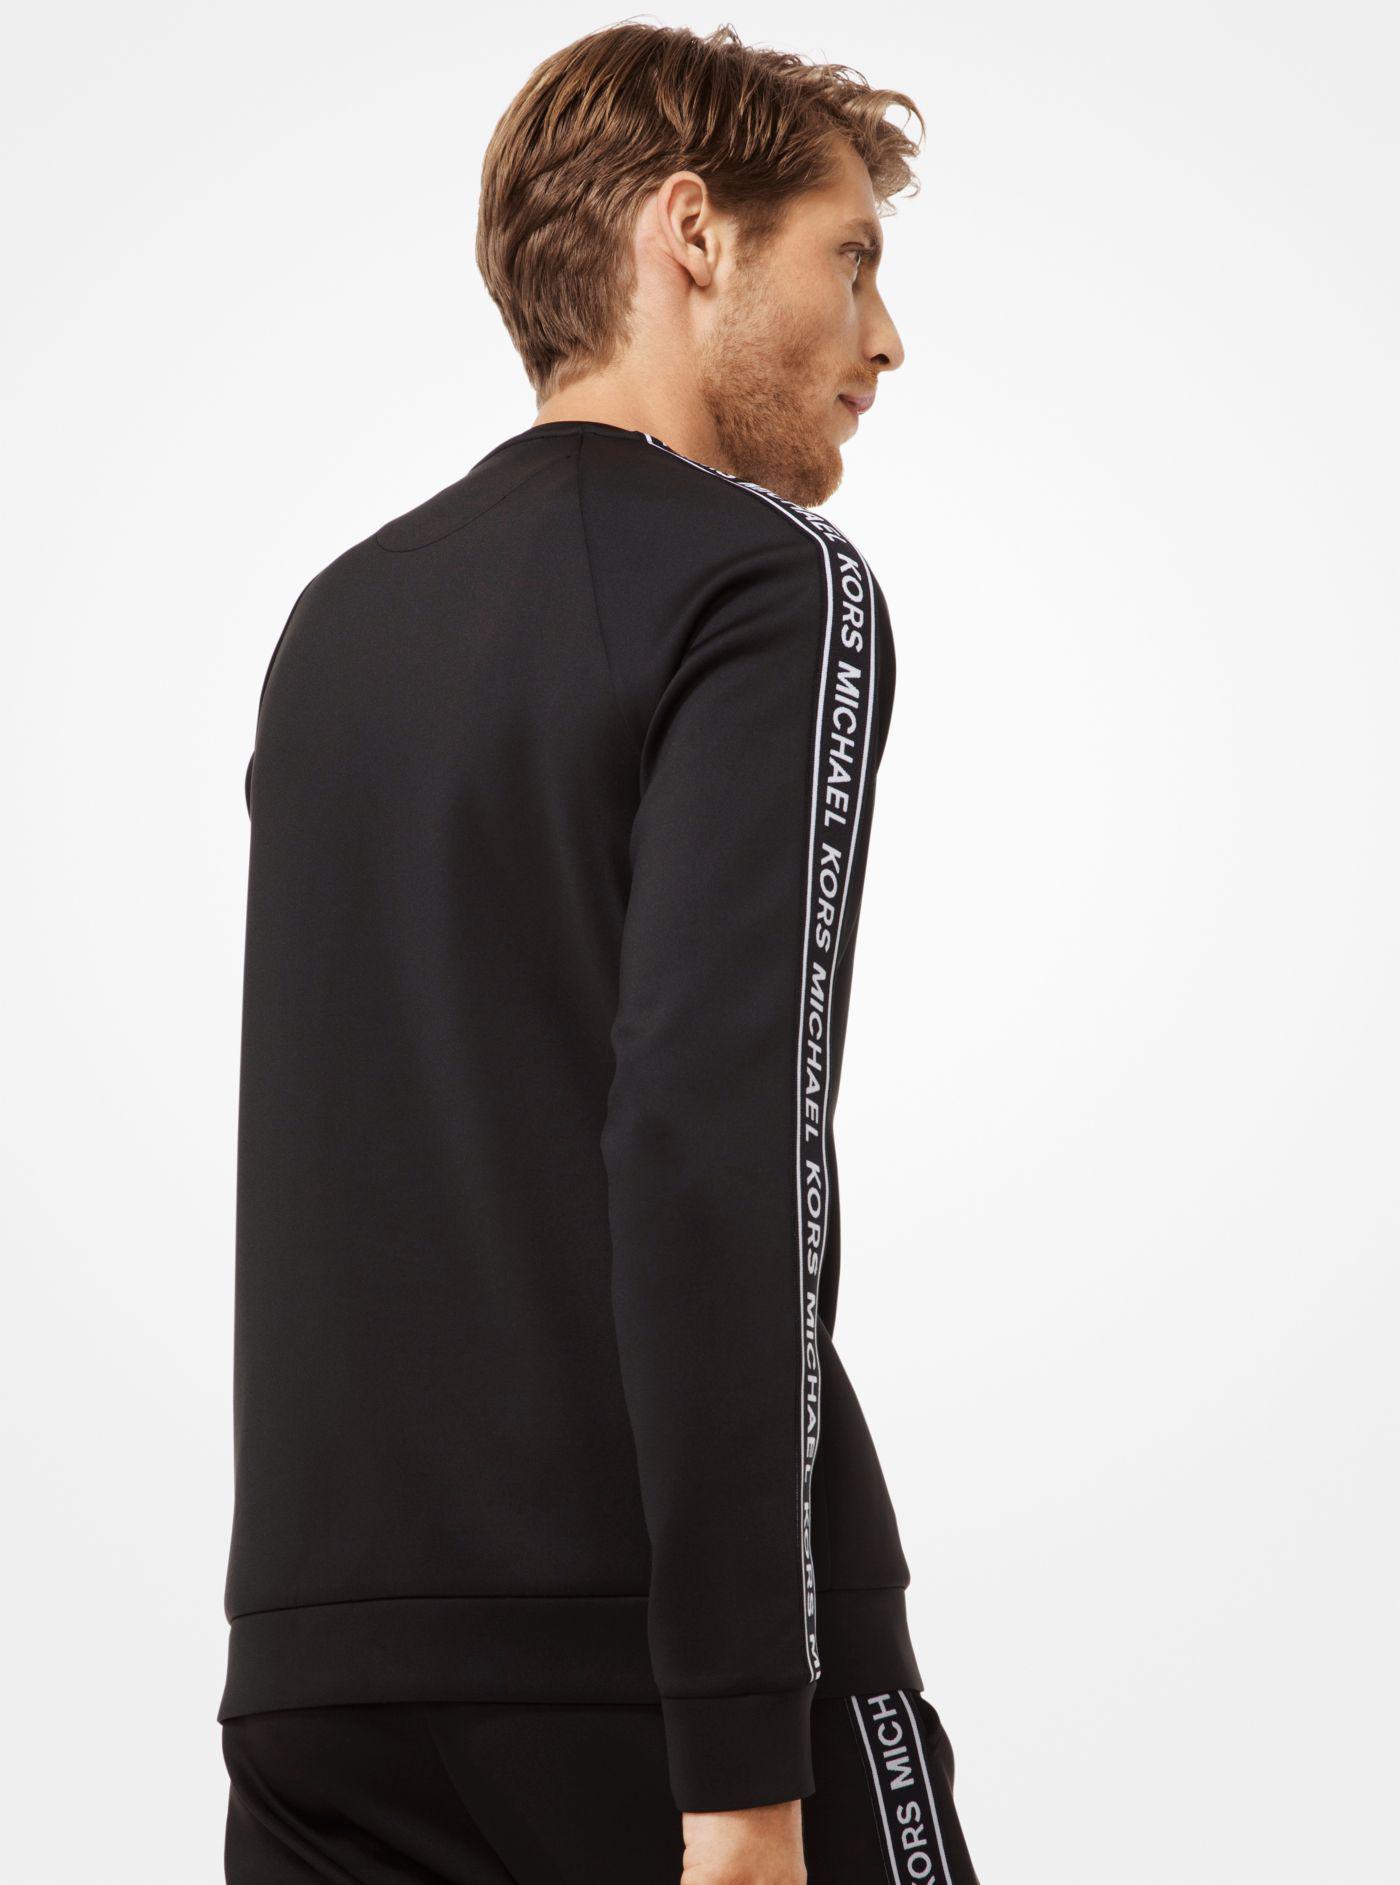 Michael Kors Synthetic Scuba Logo Sweatshirt in Black for Men - Lyst